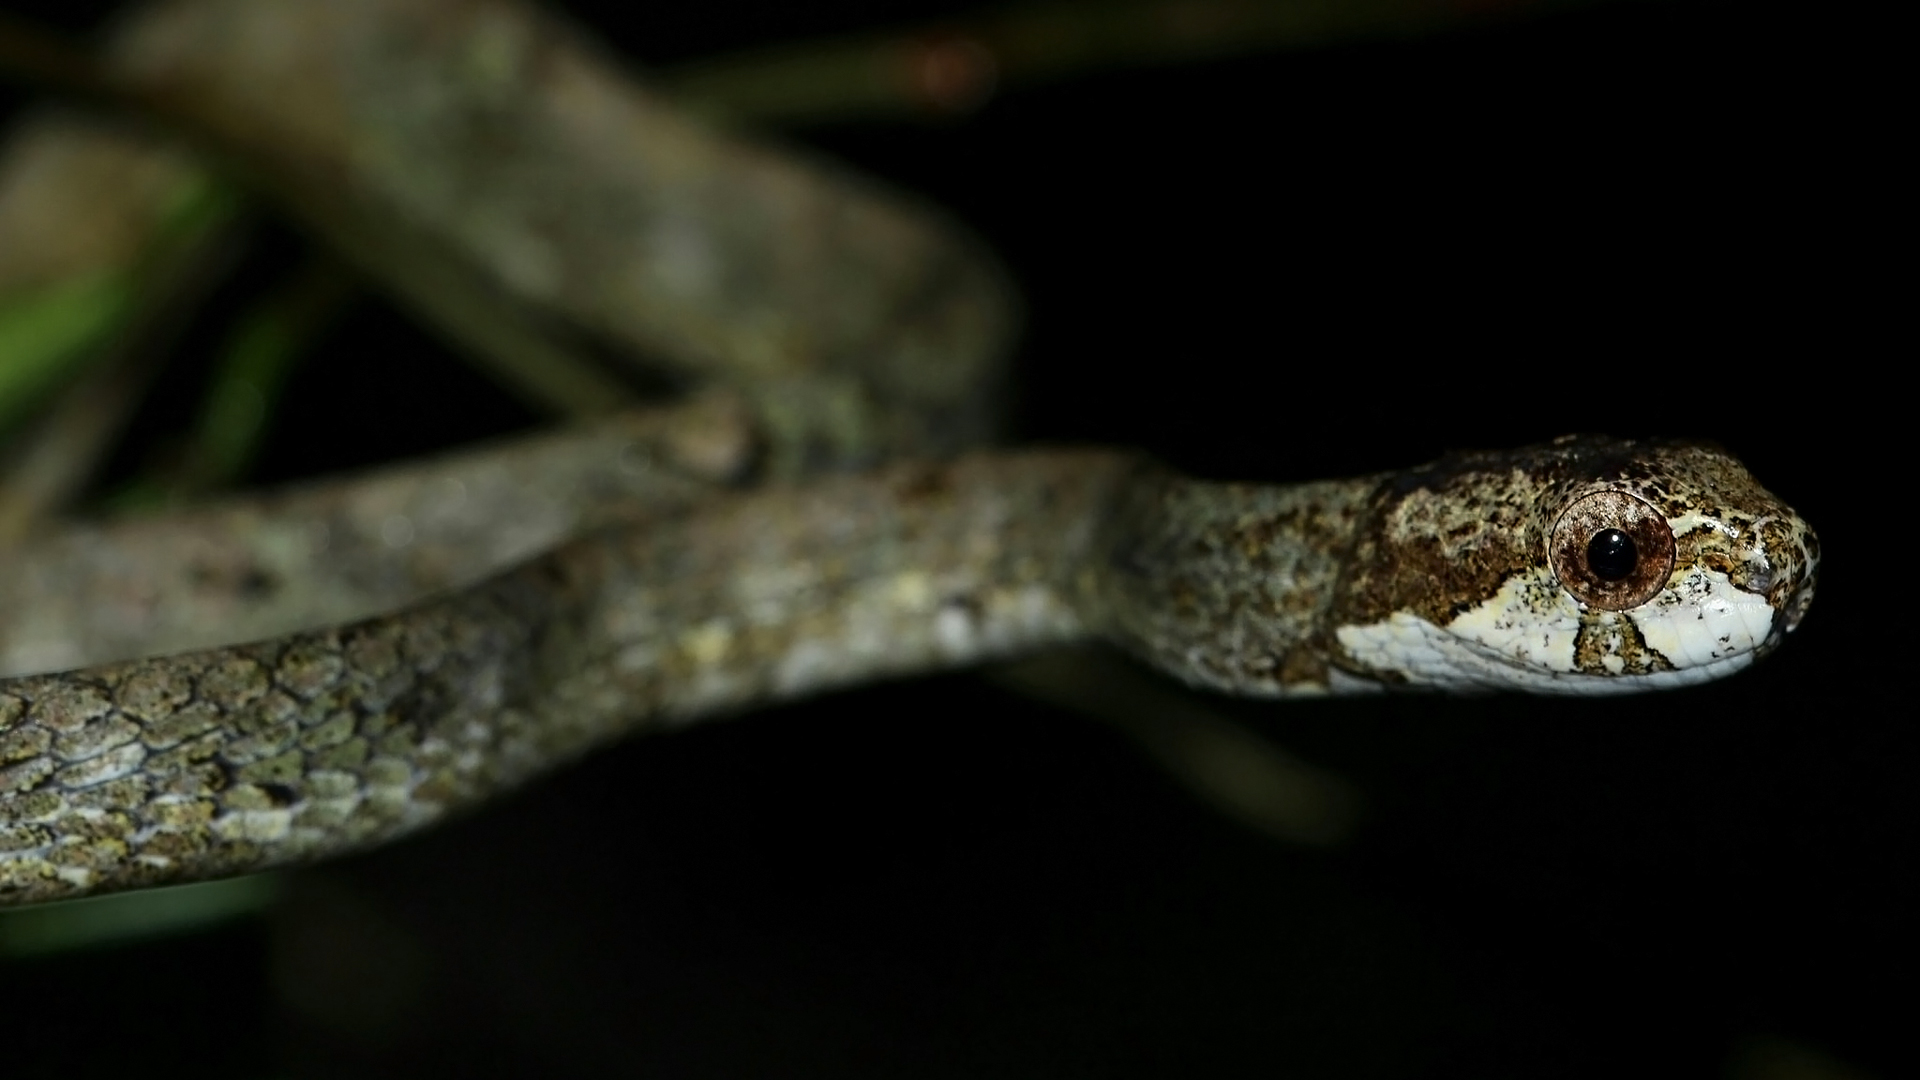 Blunt-headed Slug Snake Aplopeltura boa photo by Jojo De Peralta in Palawan